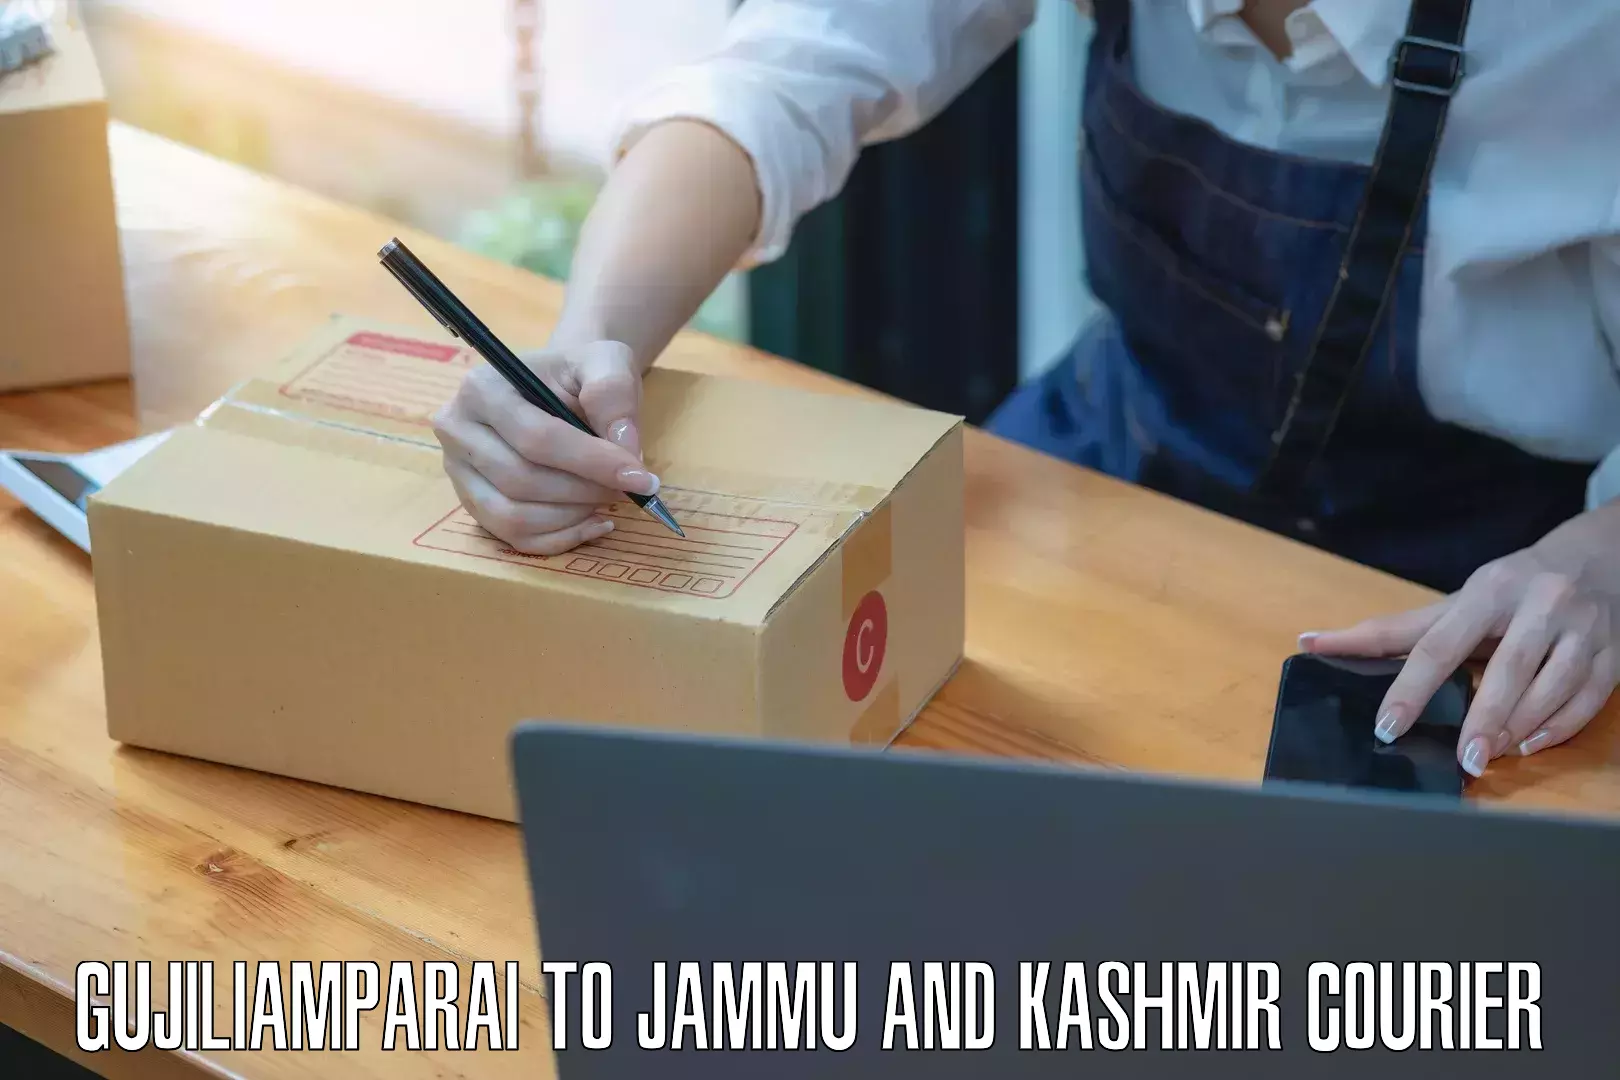 Express shipping Gujiliamparai to Jammu and Kashmir